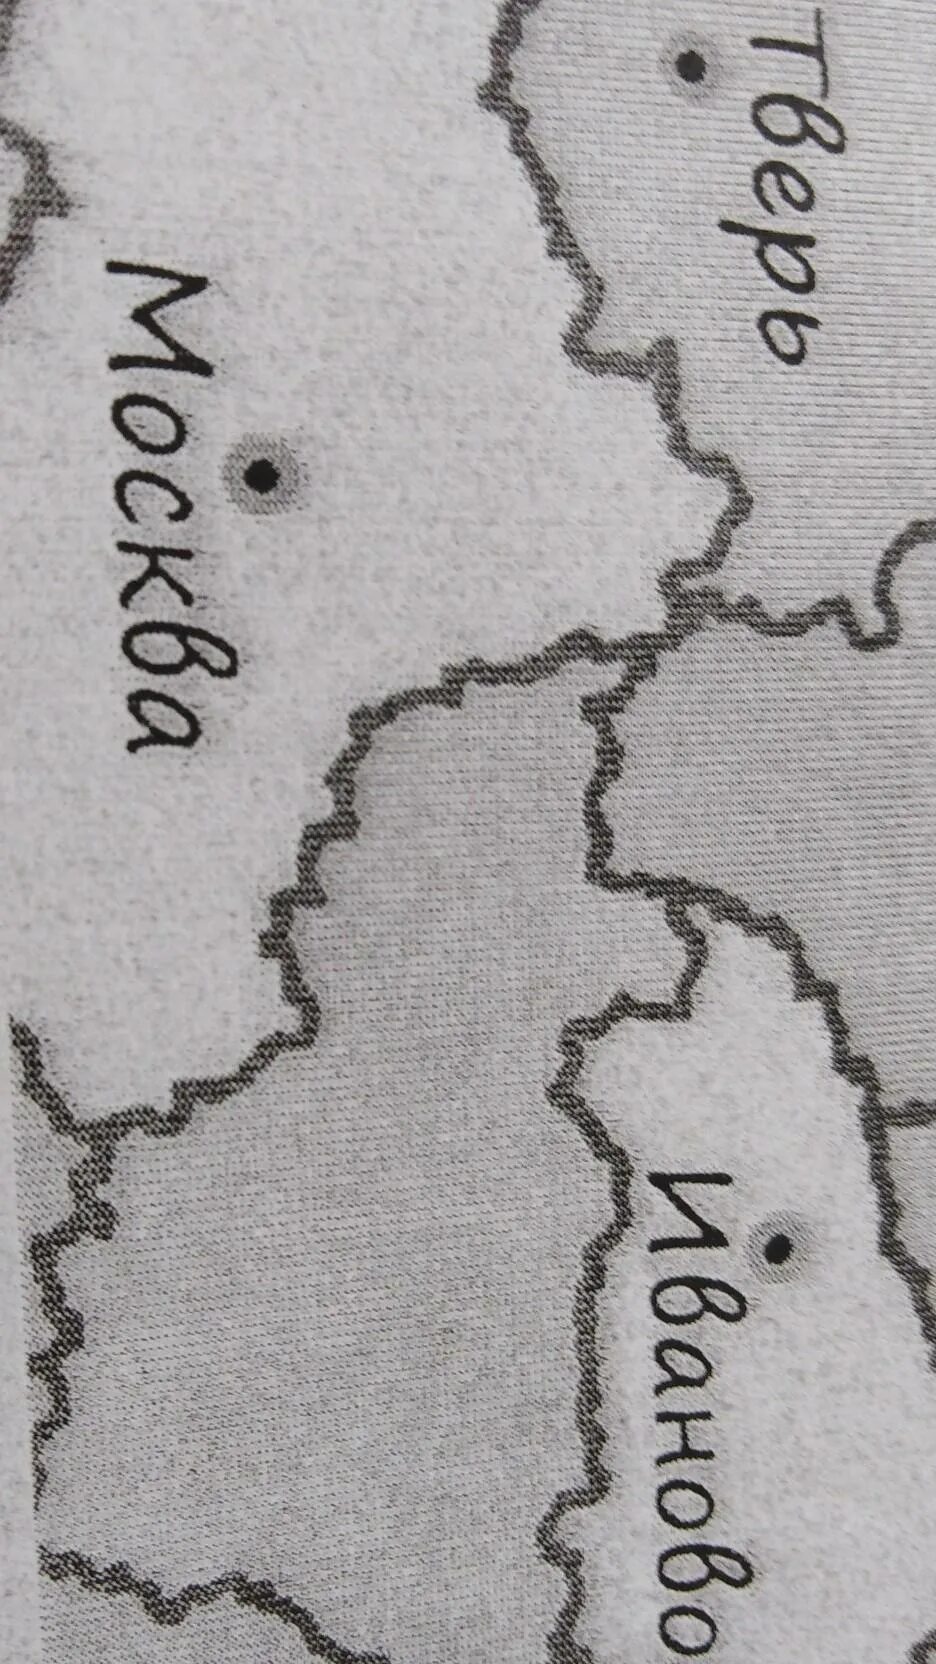 На рисунке изображена часть европейской части россии. На рисунке изображён фрагмент карты европейской части. На рисунке изображен фрагмент карты европейской части России. На рисунке изображена карта европейской части России. На картинке изображен фрагмент карты европейской части России.